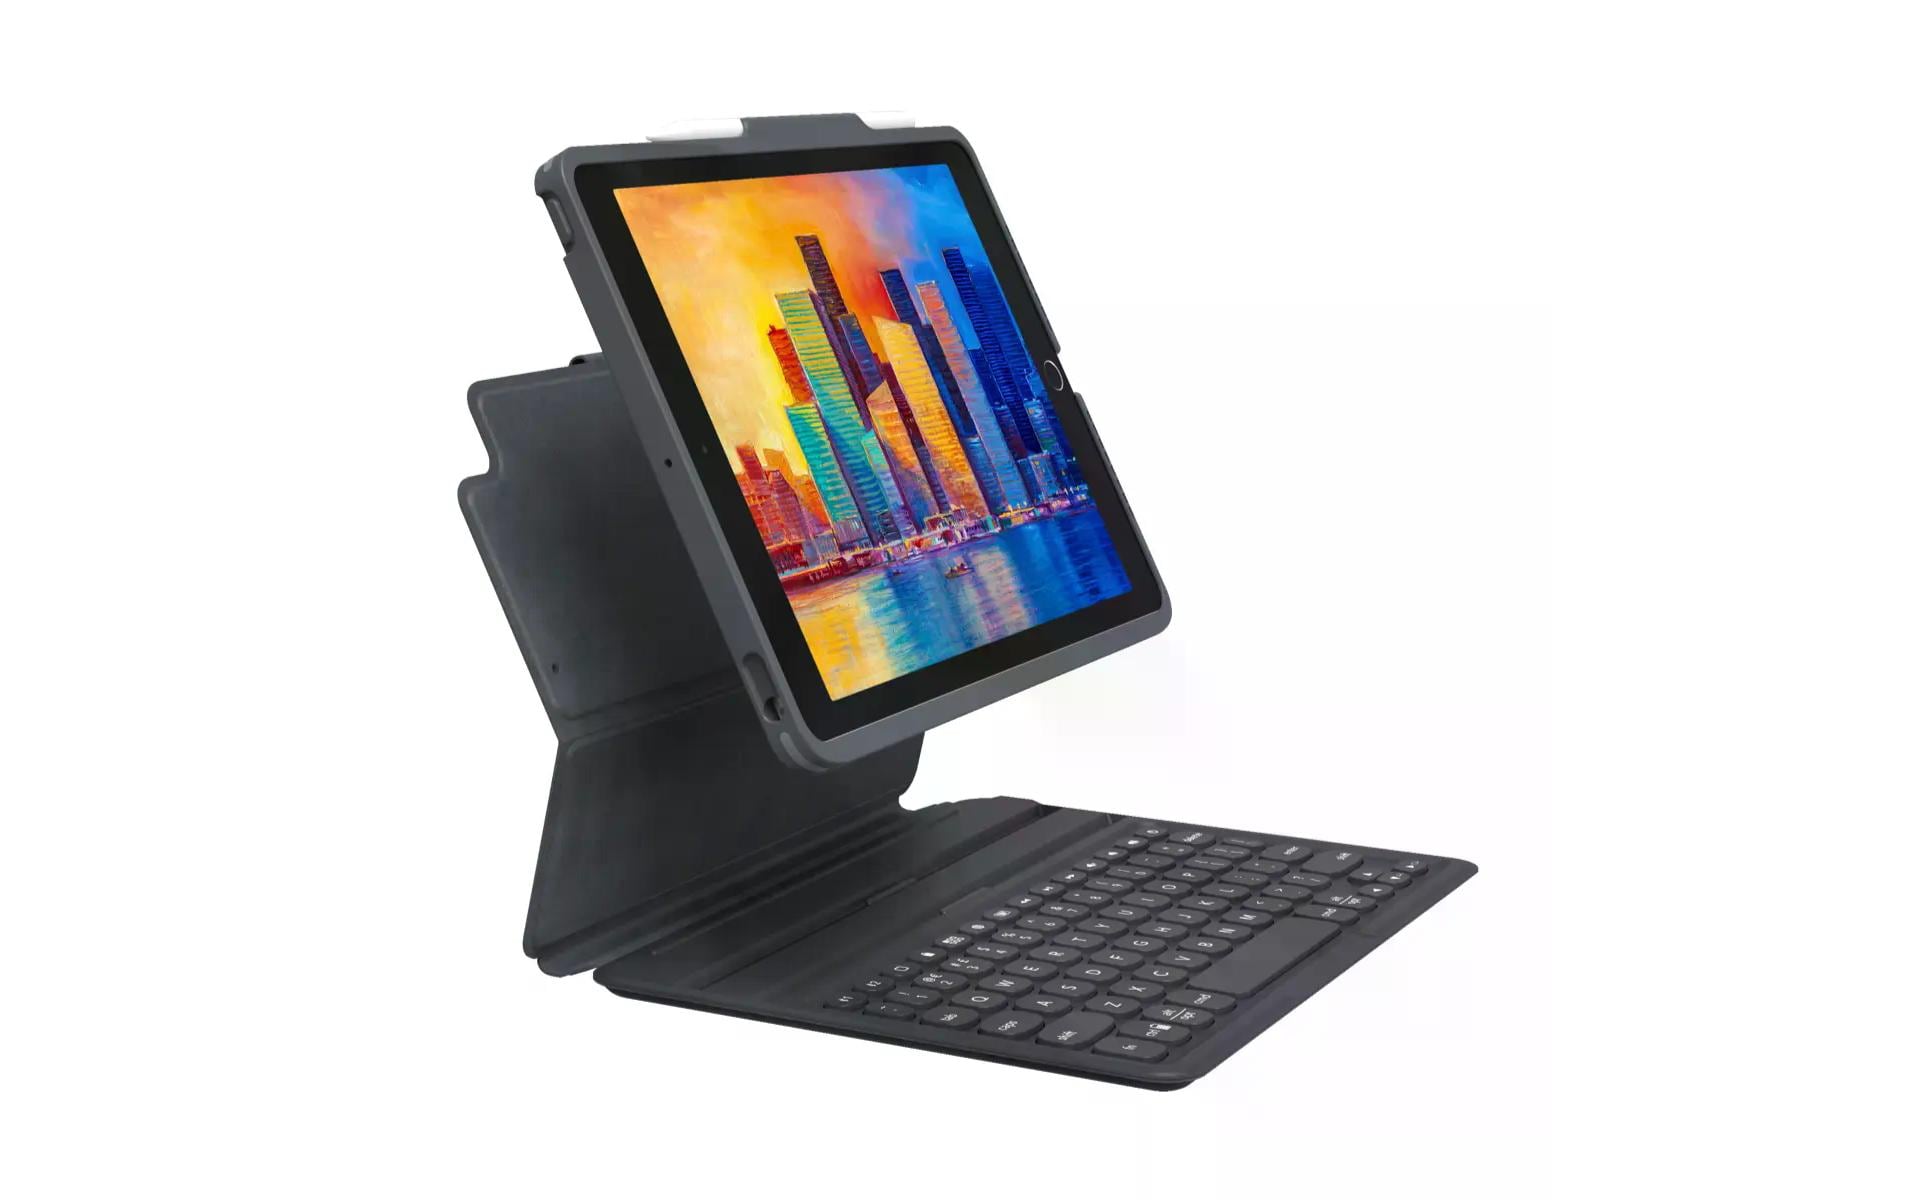 Zagg Tablet Tastatur Cover Pro Keys iPad 10.9 (10 .Gen)